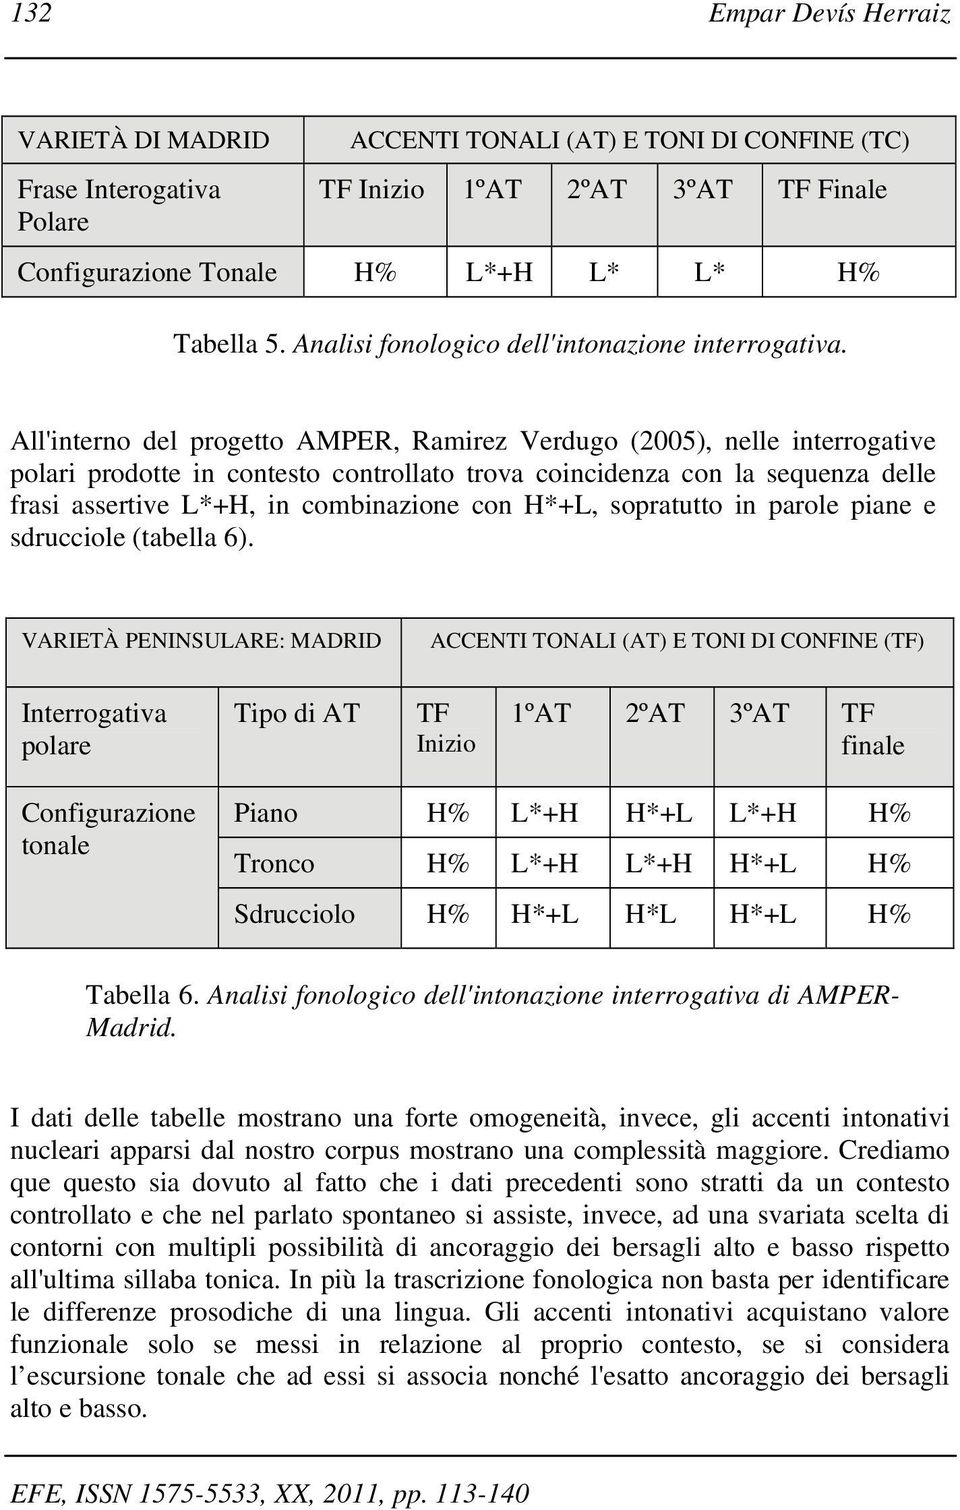 All'interno del progetto AMPER, Ramirez Verdugo (2005), nelle interrogative polari prodotte in contesto controllato trova coincidenza con la sequenza delle frasi assertive L*+H, in combinazione con